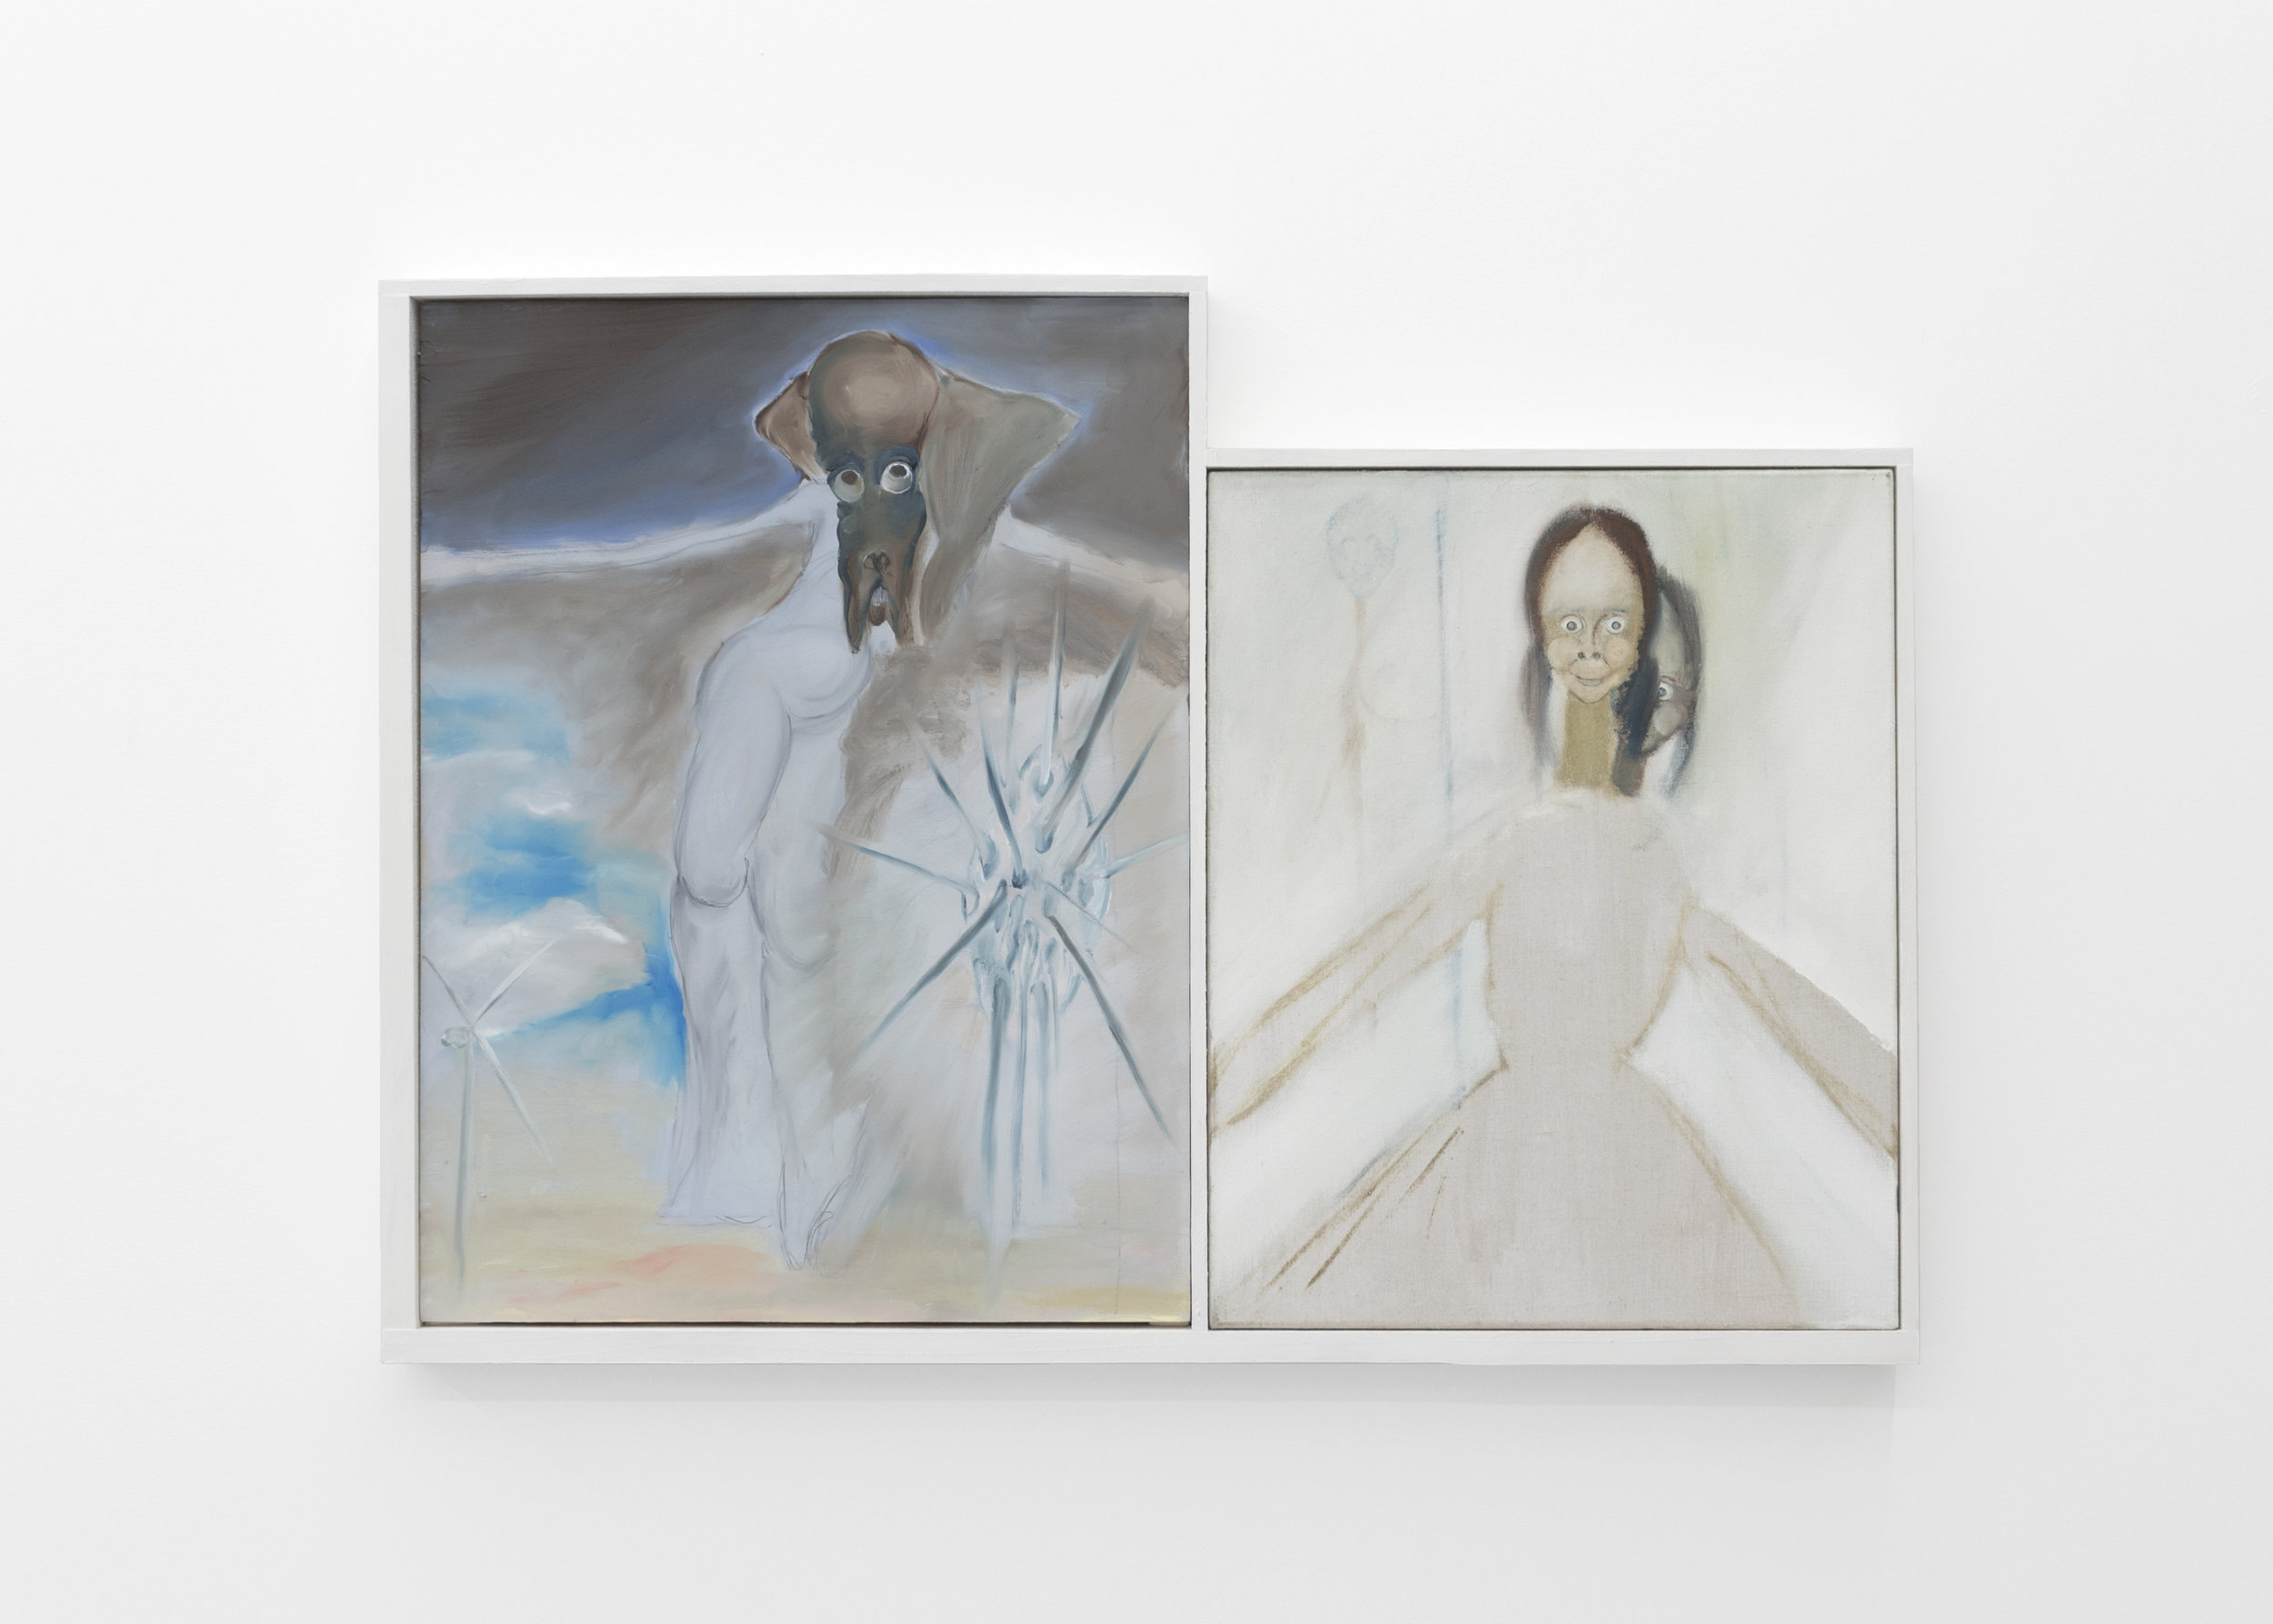  Kira Scerbin,  Destroyer,  2019. Oil on linen, oil on panel, artist frame 